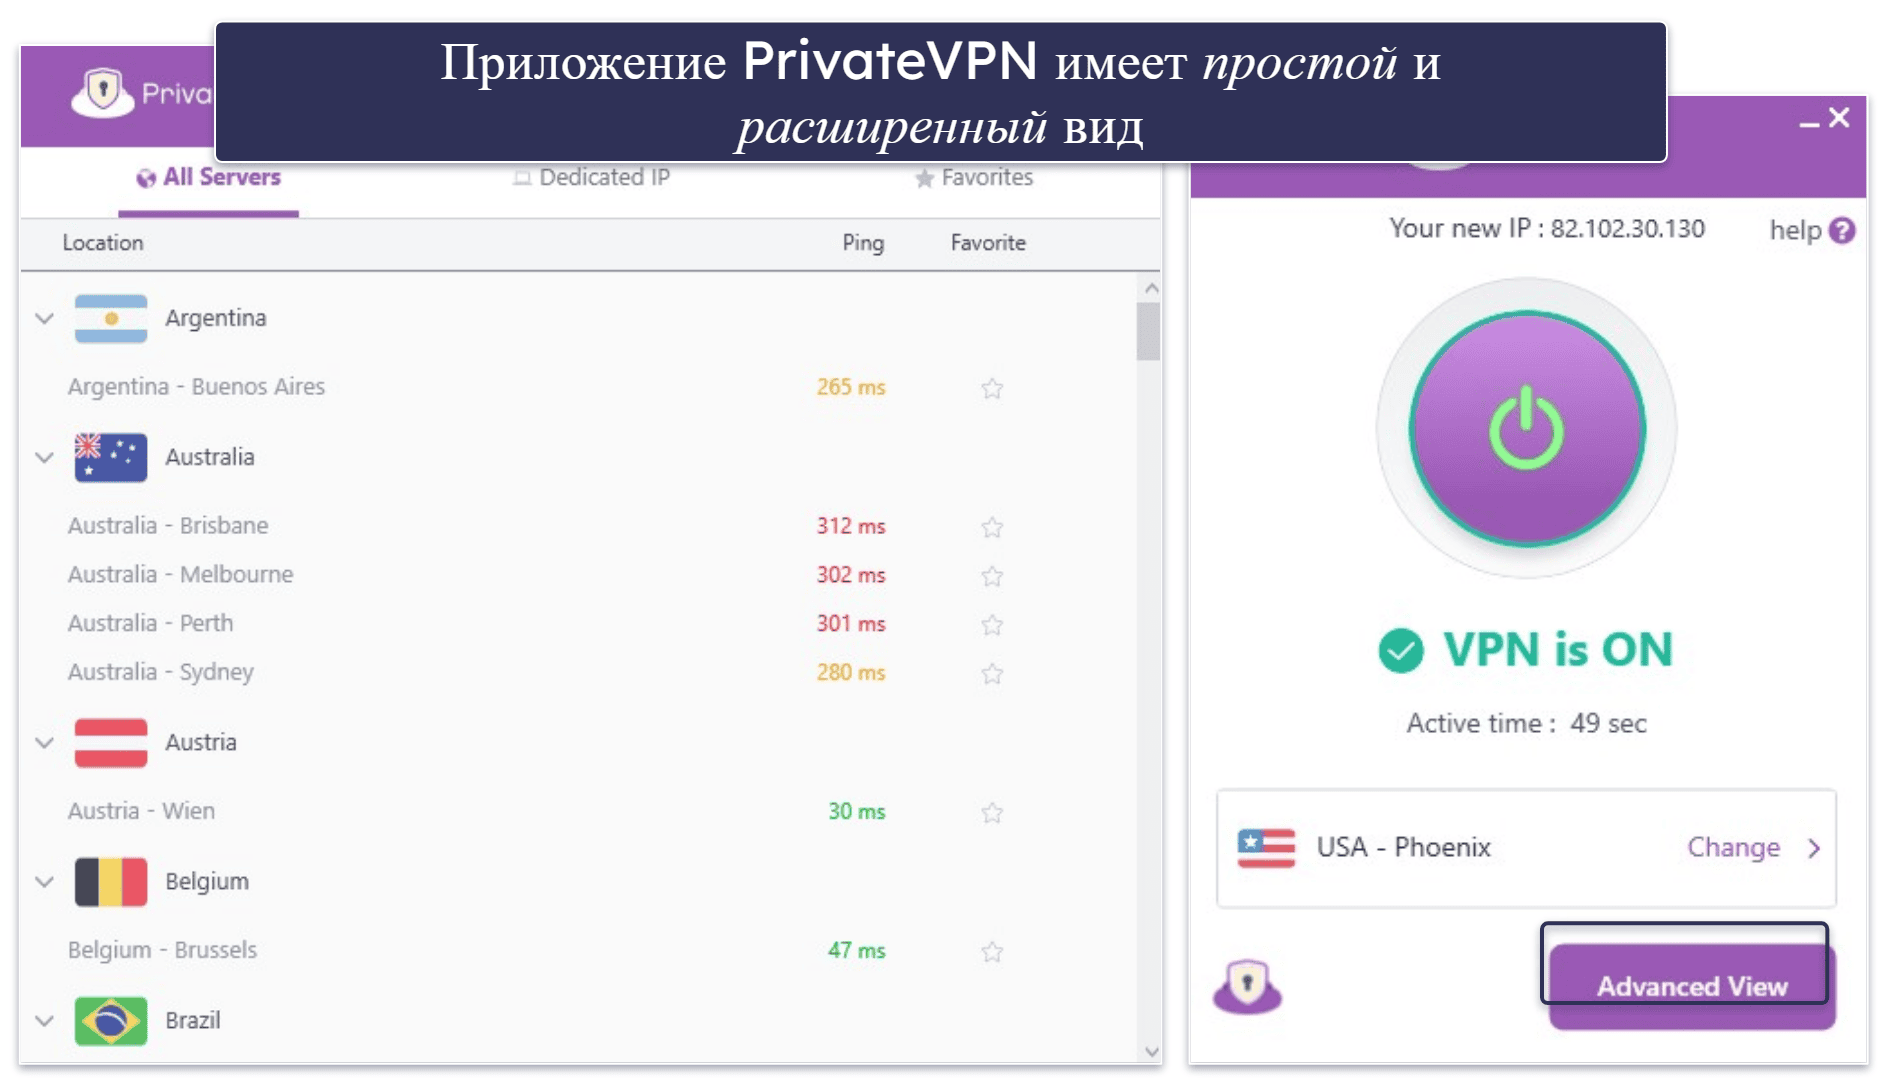 6. PrivateVPN — очень интуитивный (хороший для новых пользователей)